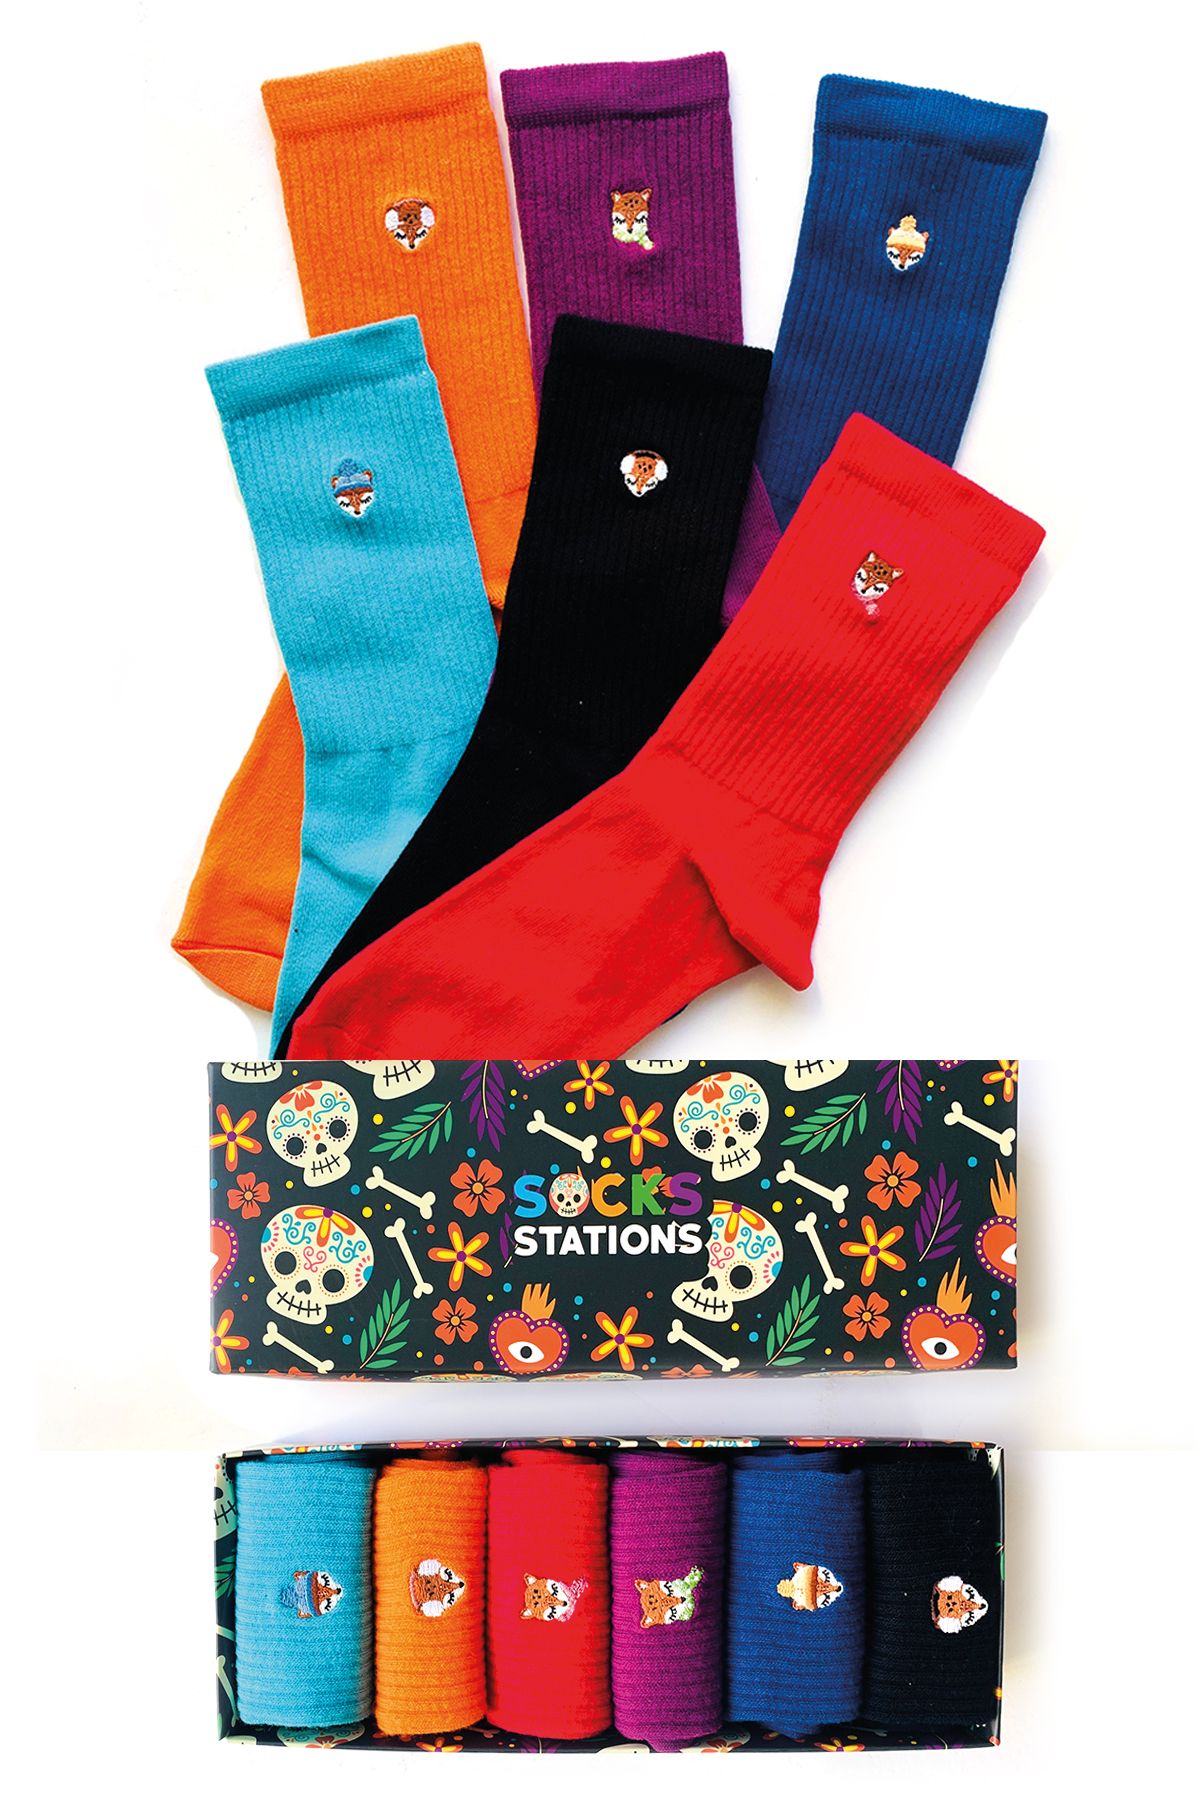 Socks Stations 6'lı Tilki Nakışlı Renkli Desenli Çorap Kutusu